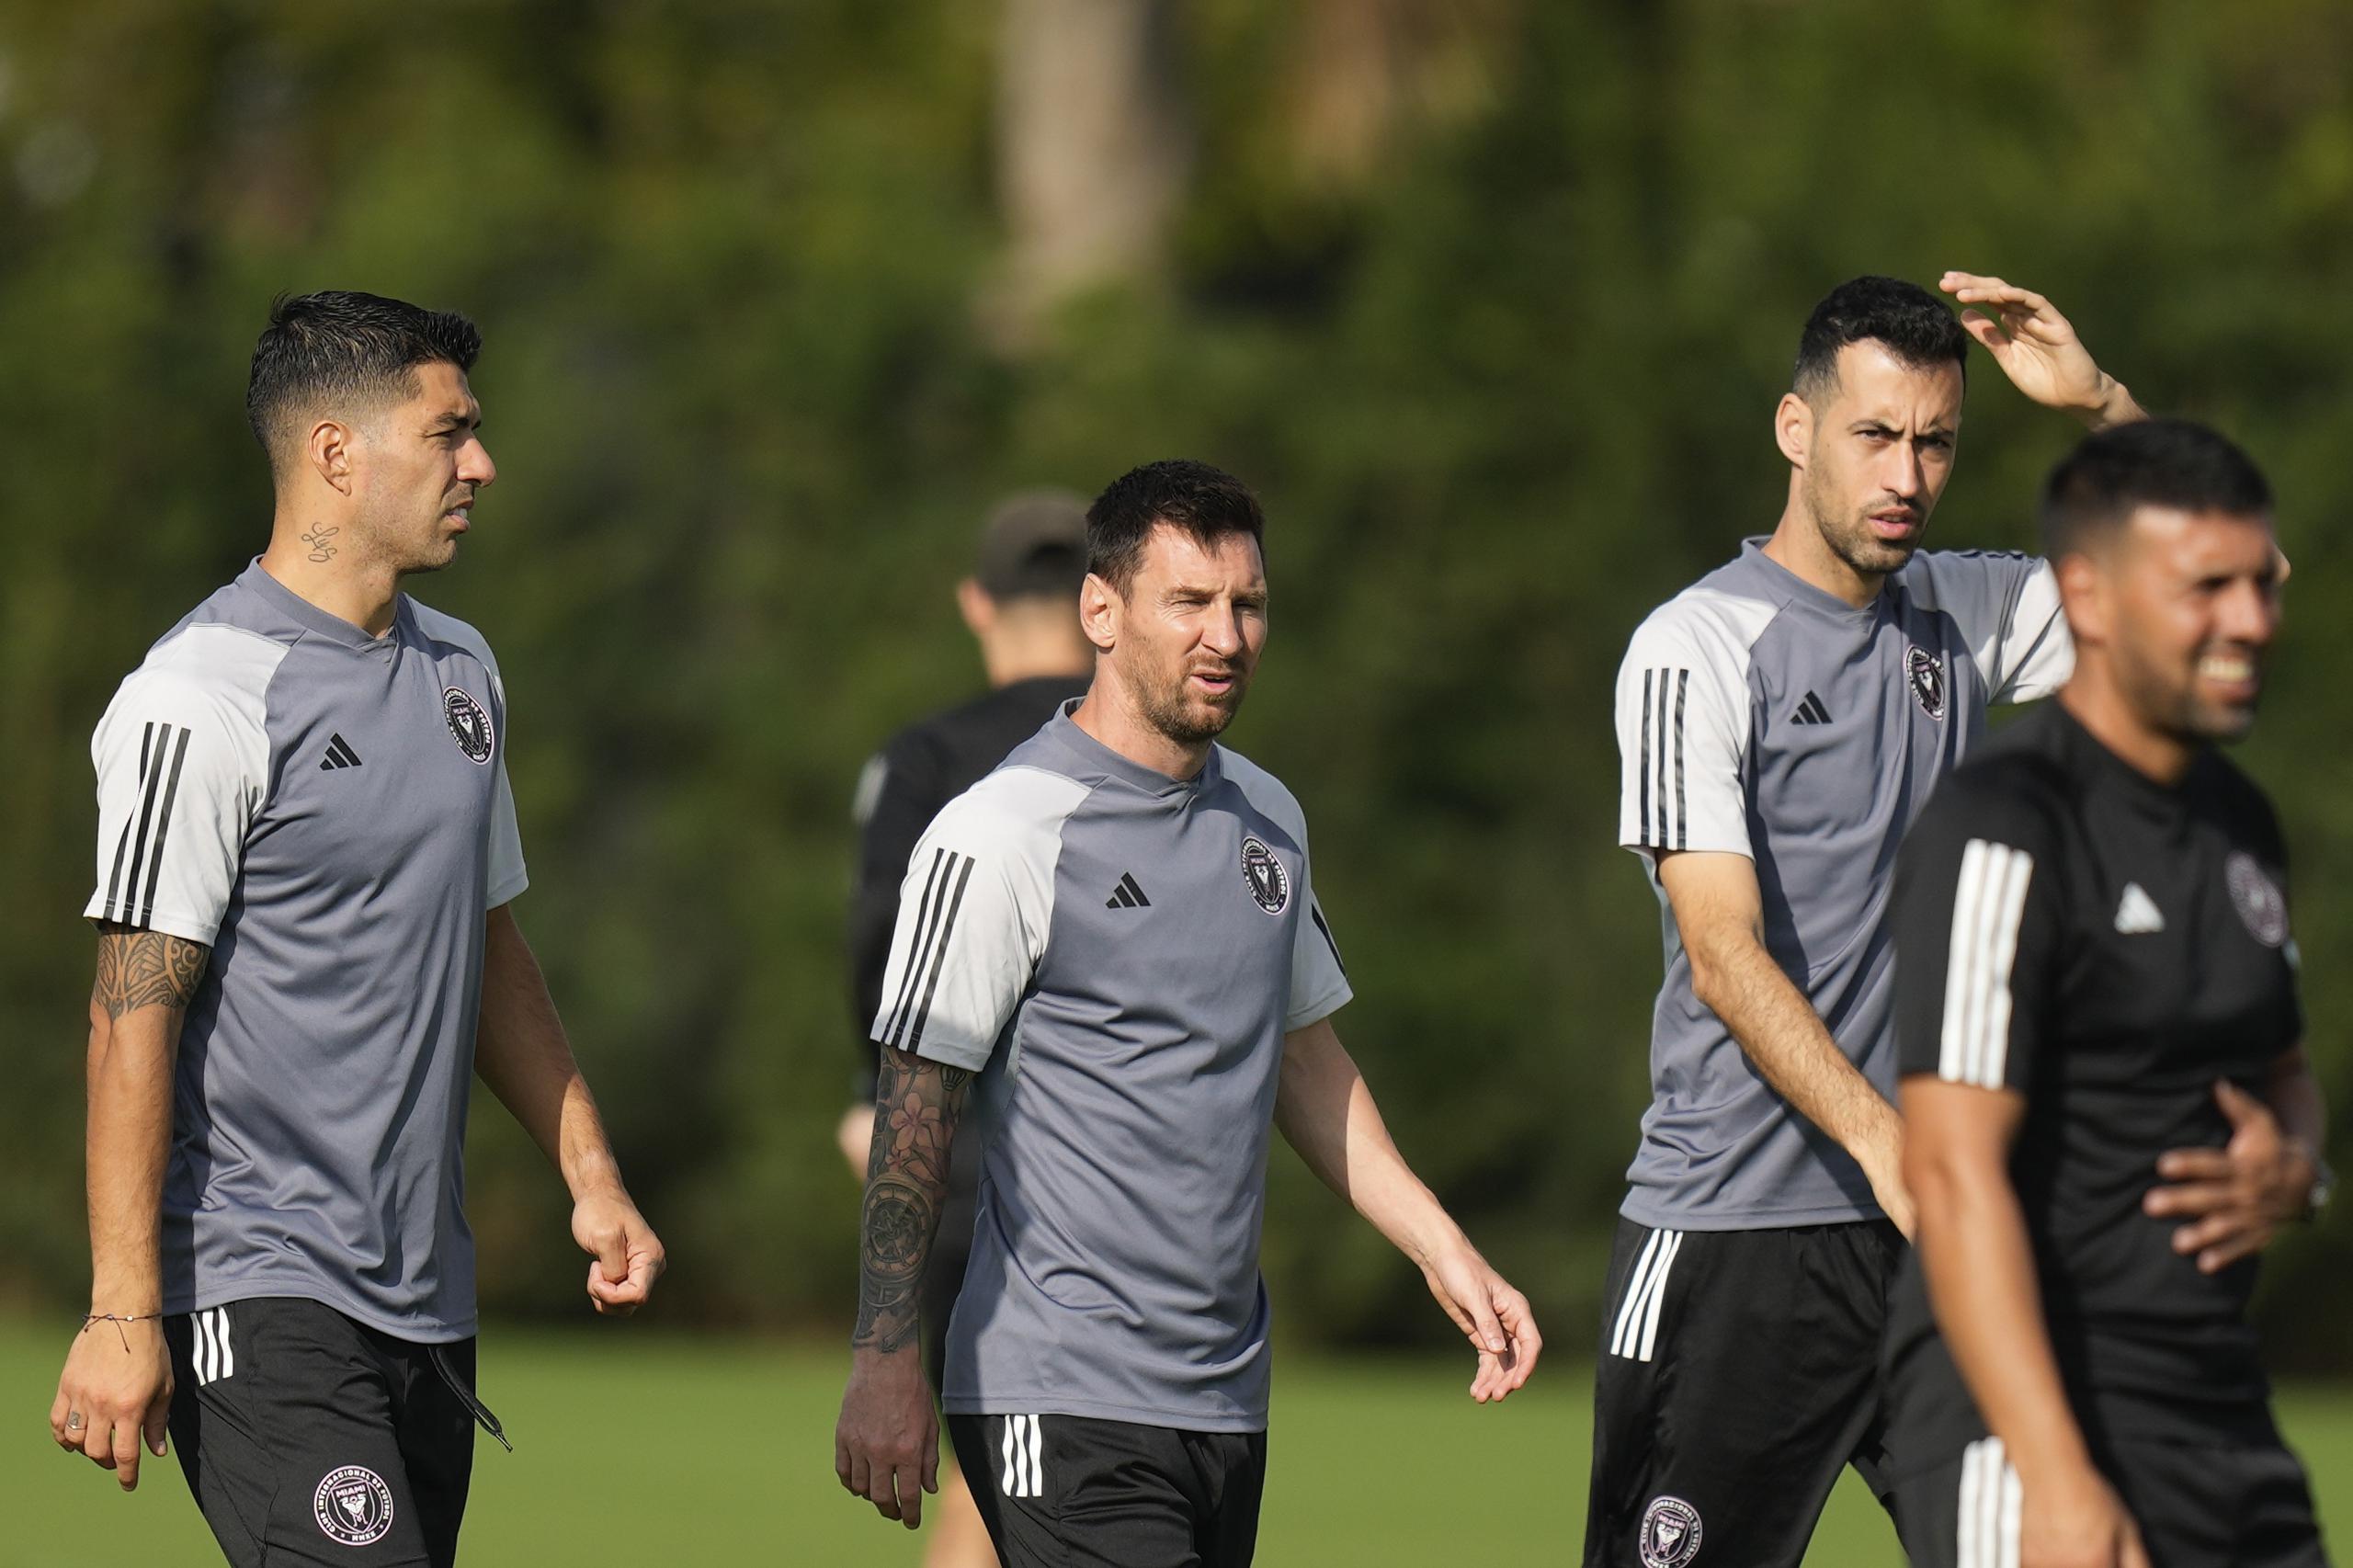 Luis Suárez, a la izquierda, camina con el delantero Lionel Messi, centro, y el defensa Sergio Busquets, segundo a la derecha, durante una sesión de entrenamiento de fútbol de la MLS,